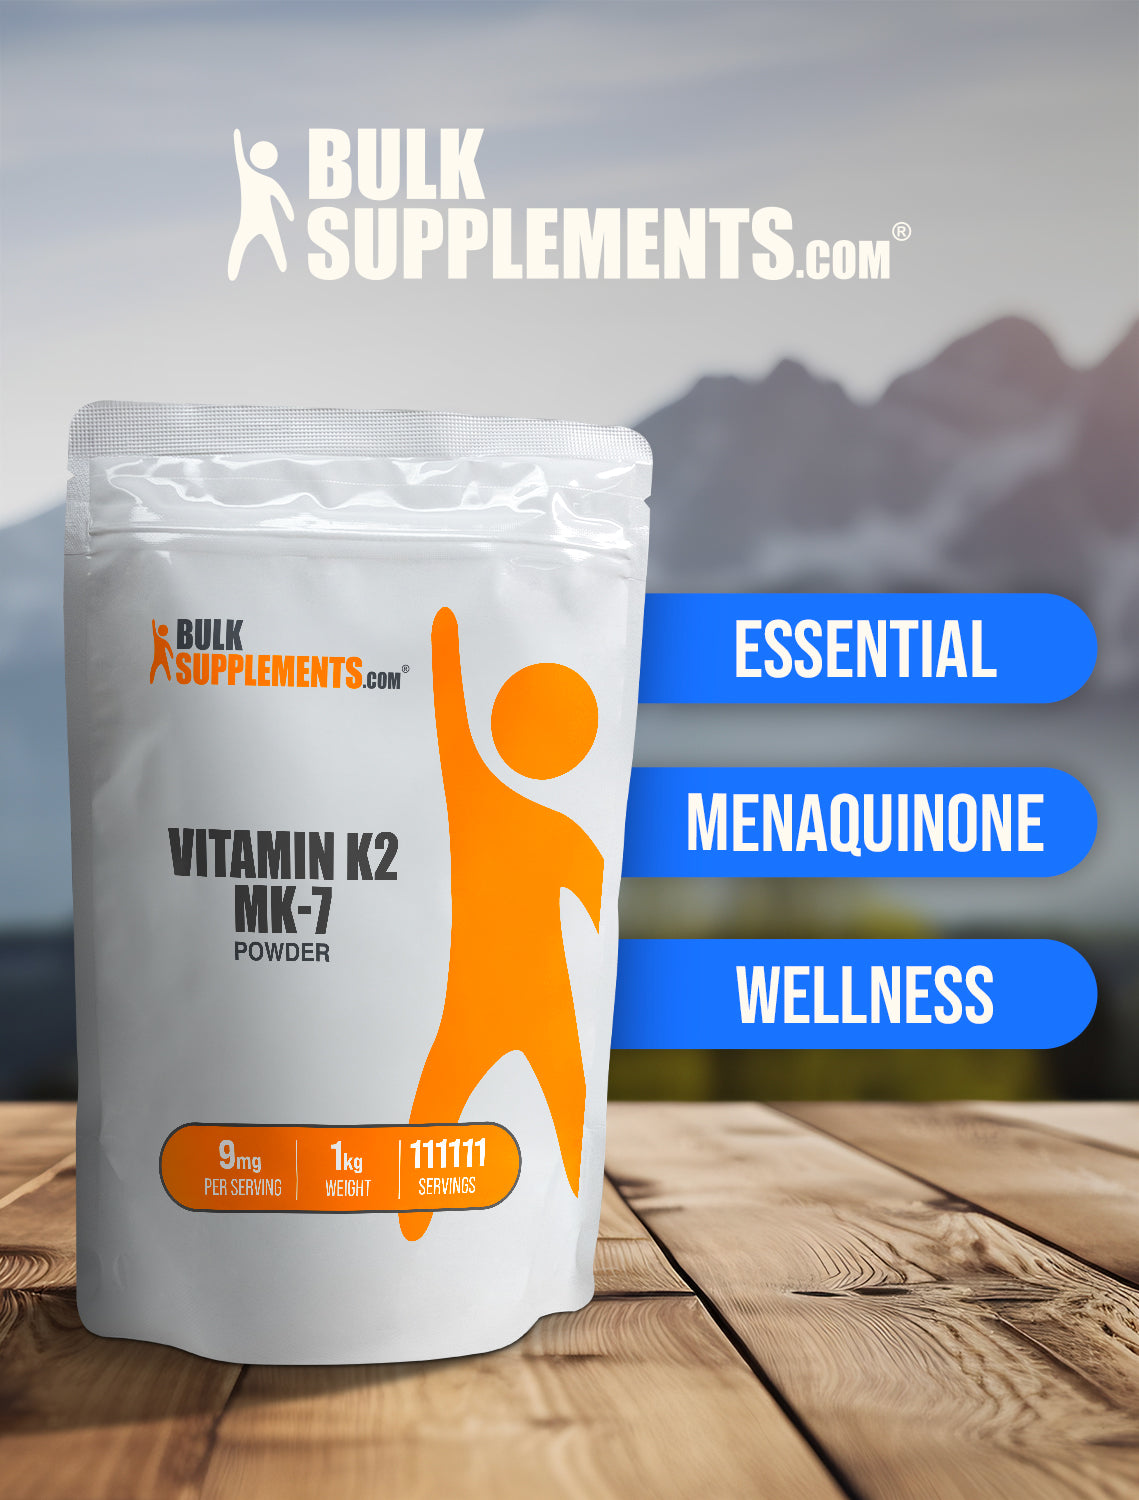 Vitamin K2 MK-7 powder keyword image 1kg